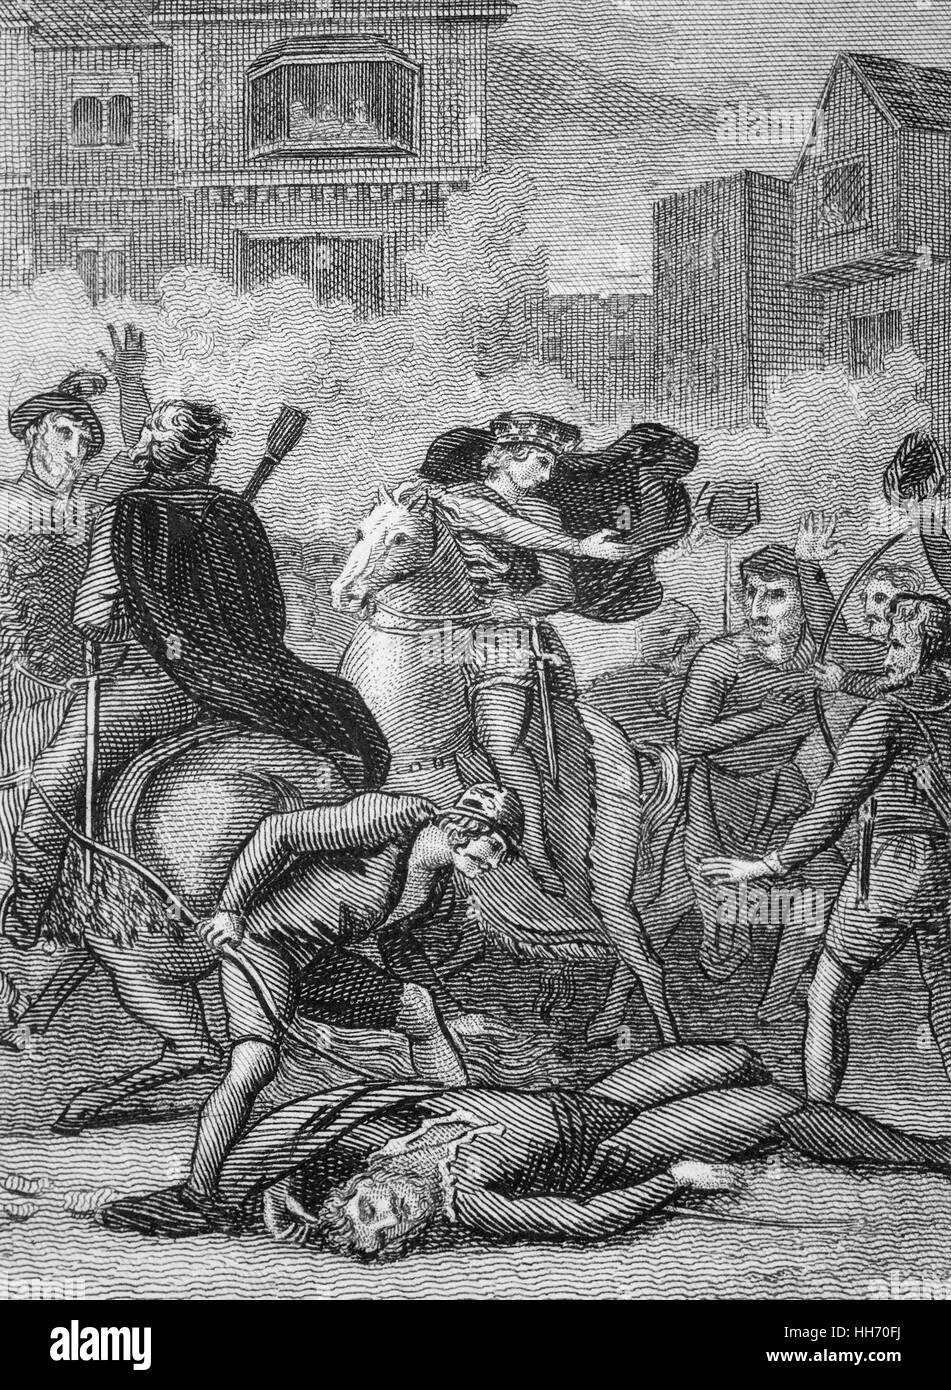 Walter 'Wat' Tyler était le chef de la Révolte des paysans en 1381 en Angleterre. Il marcha un groupe de rebelles de Canterbury à la capitale pour s'opposer à l'institution d'un impôt local et la demande de réformes économiques et sociales. Bien que la rébellion bref apprécié des premiers succès, Tyler a été tué par des officiers fidèles au roi Richard II lors des négociations de Smithfield, Londres 15 juin 1381. Banque D'Images